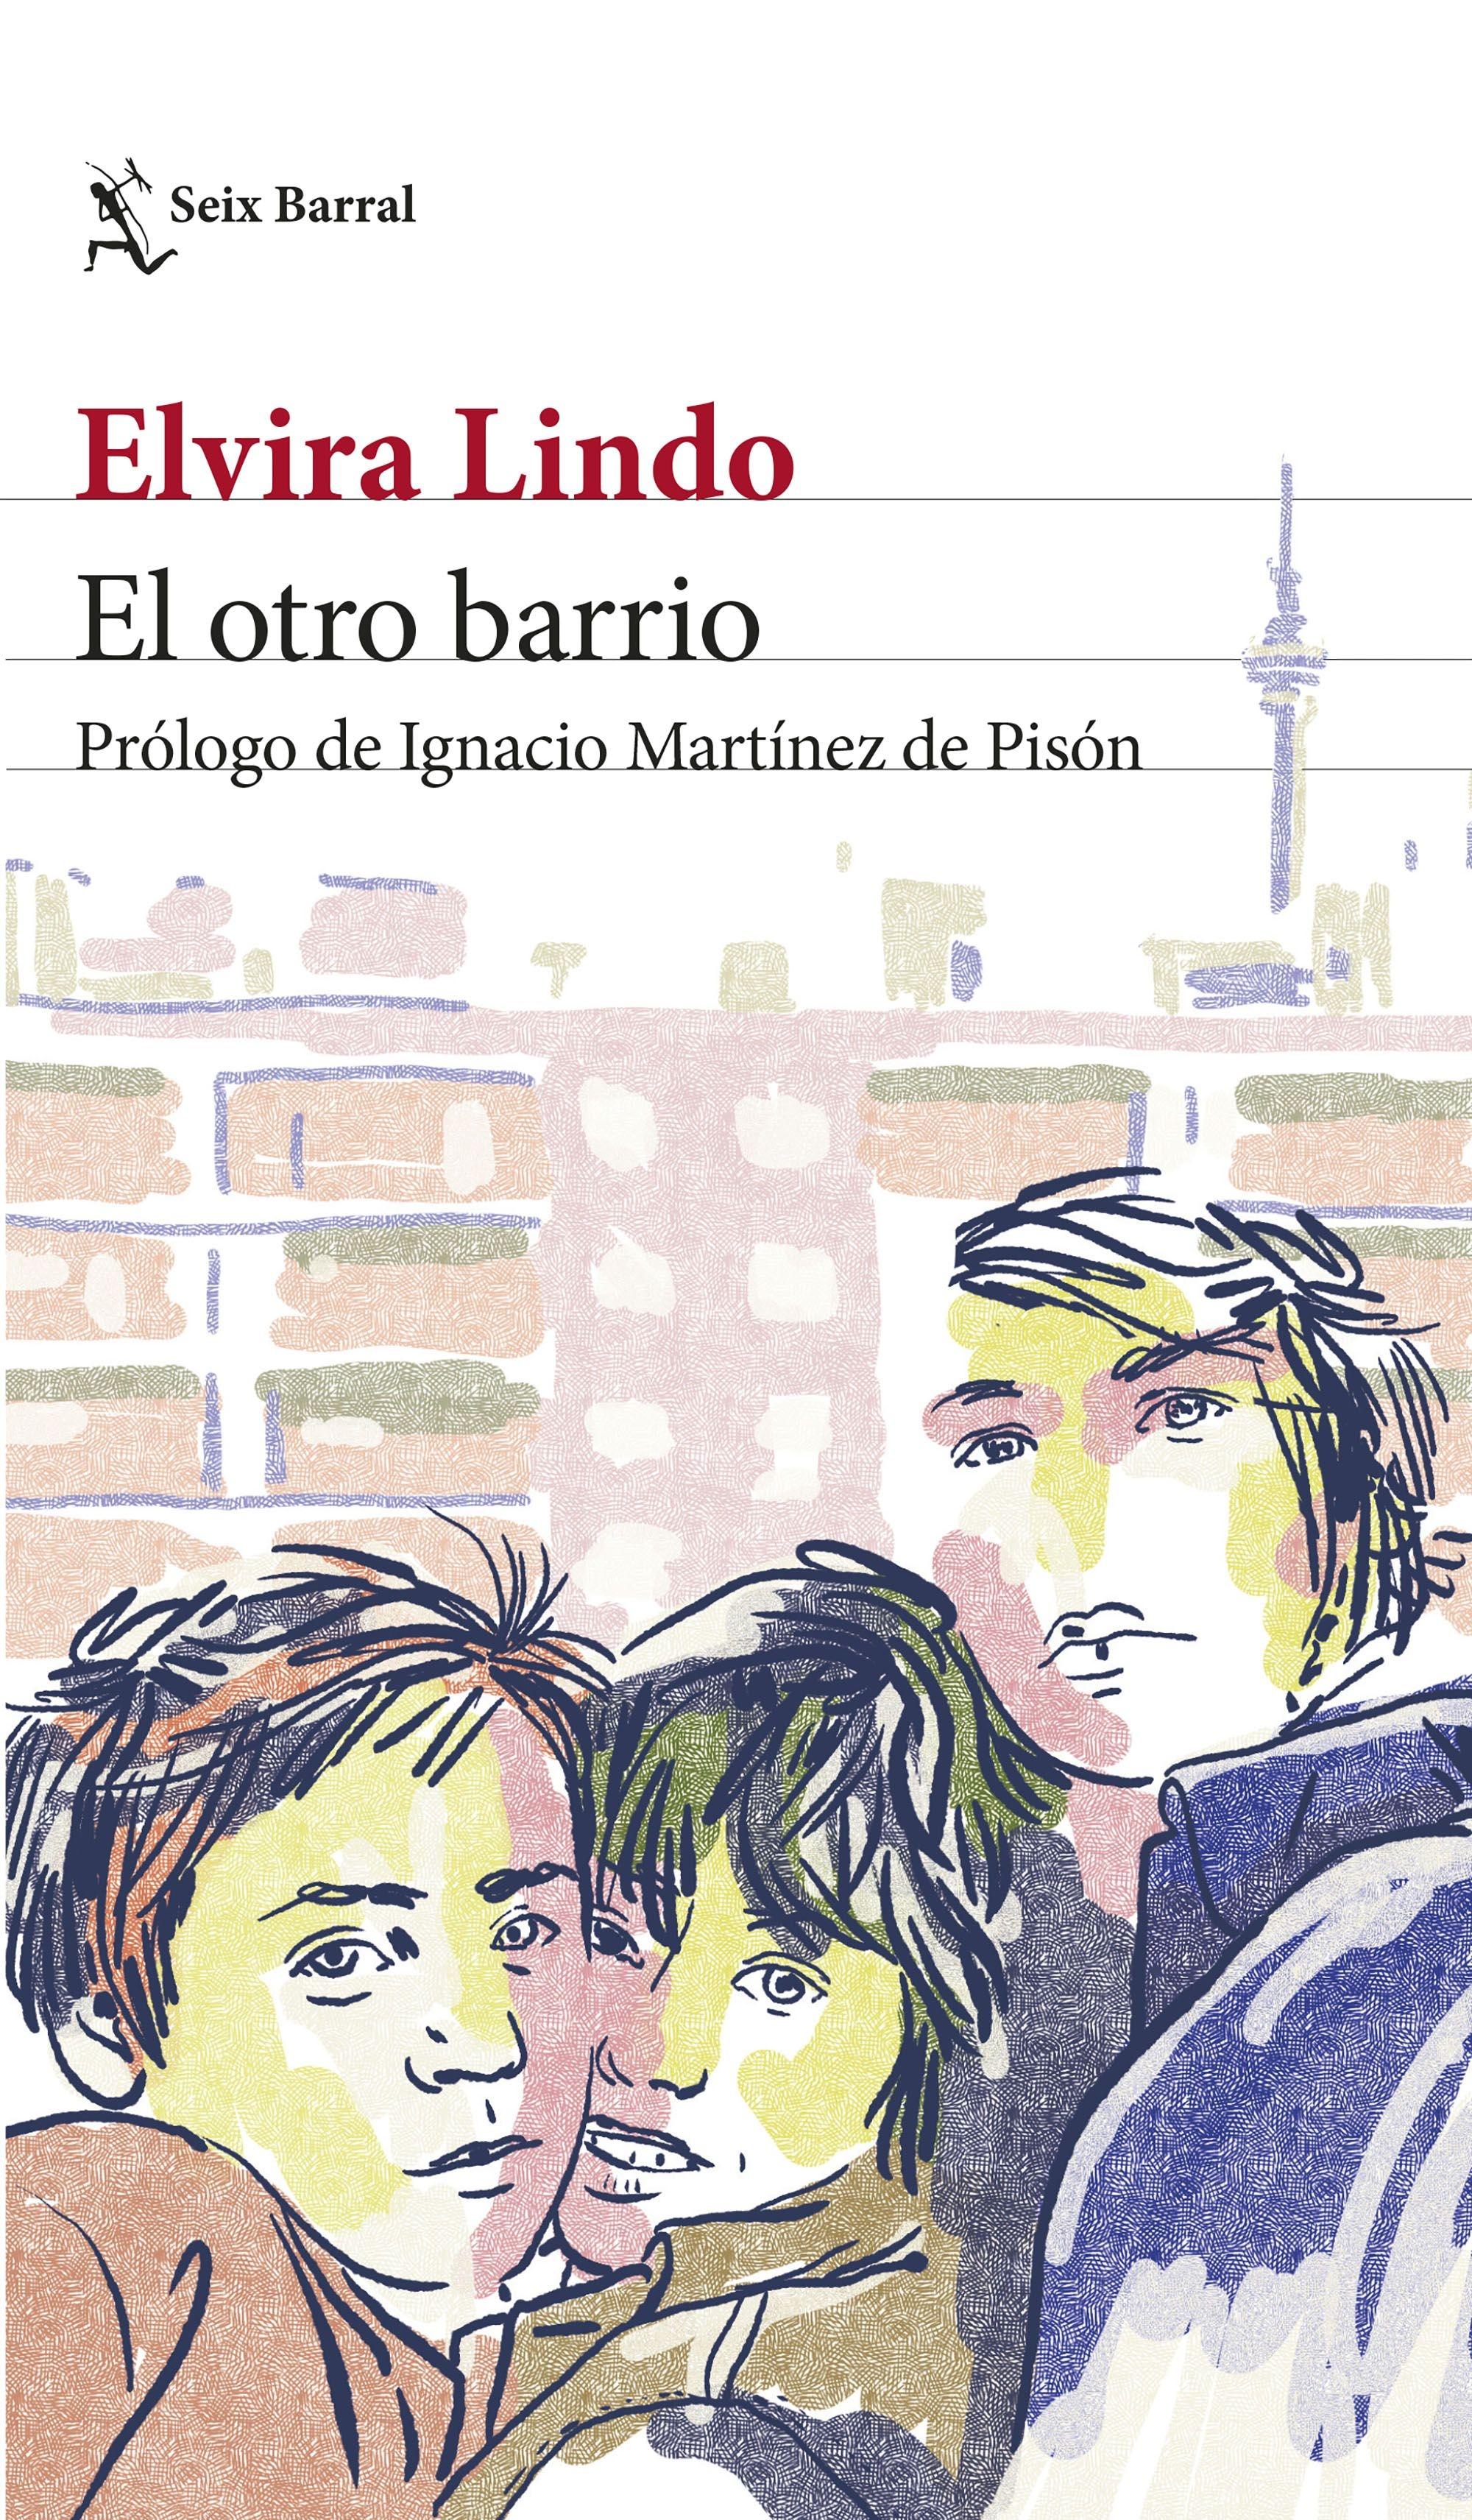 El Otro Barrio "Prólogo de Ignacio Martínez de Pisón". 